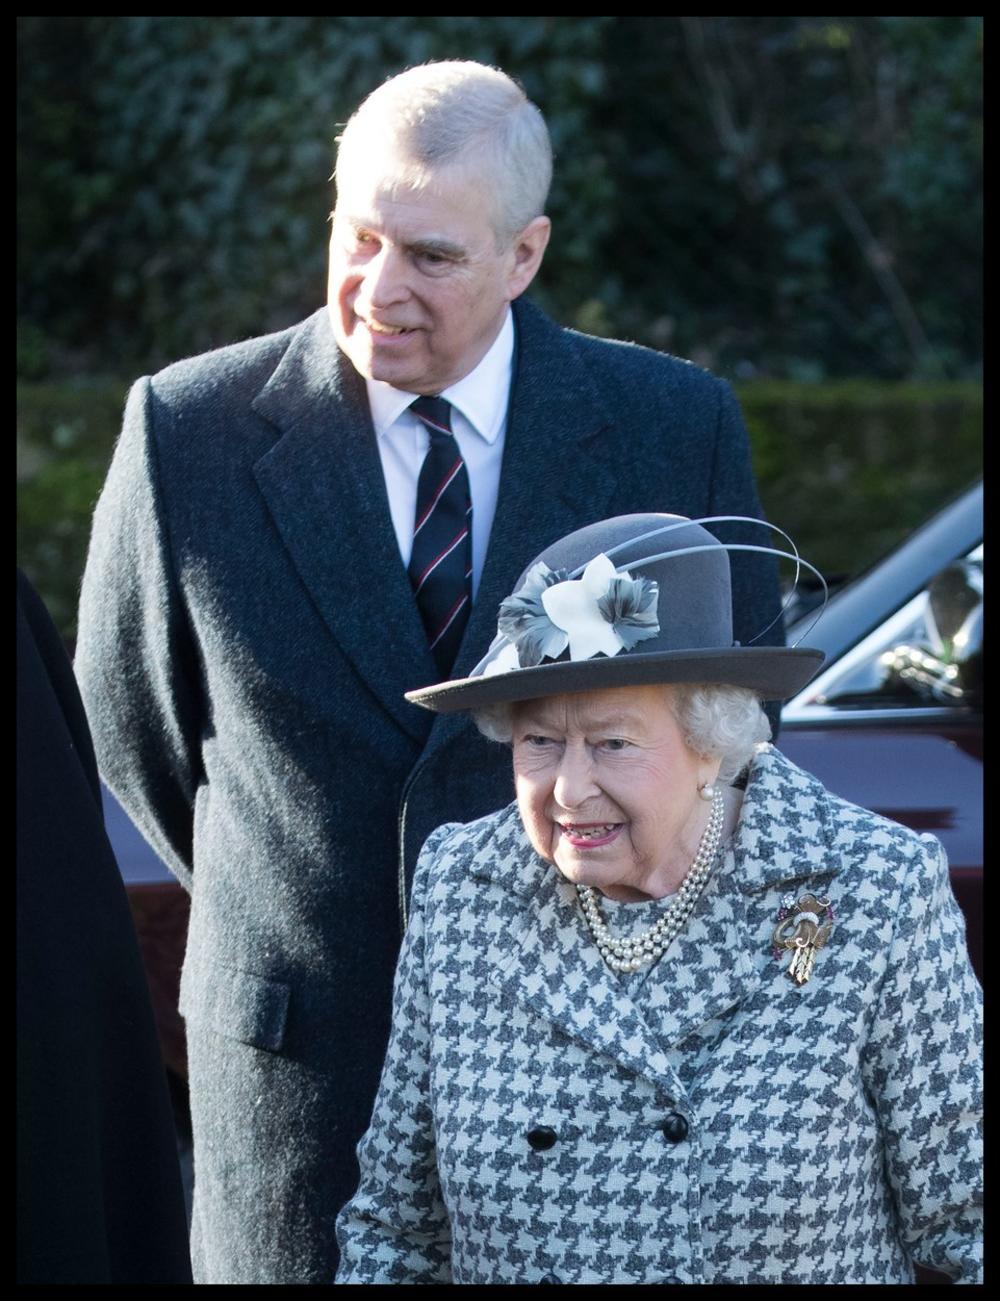 <p><br />
Kraljica Elizabeta pojavila se u javnosti samo dan nakon što je saopštenjem obavestila javnost da je postigla dogovor sa Megan Markl i princem Harijem.</p>